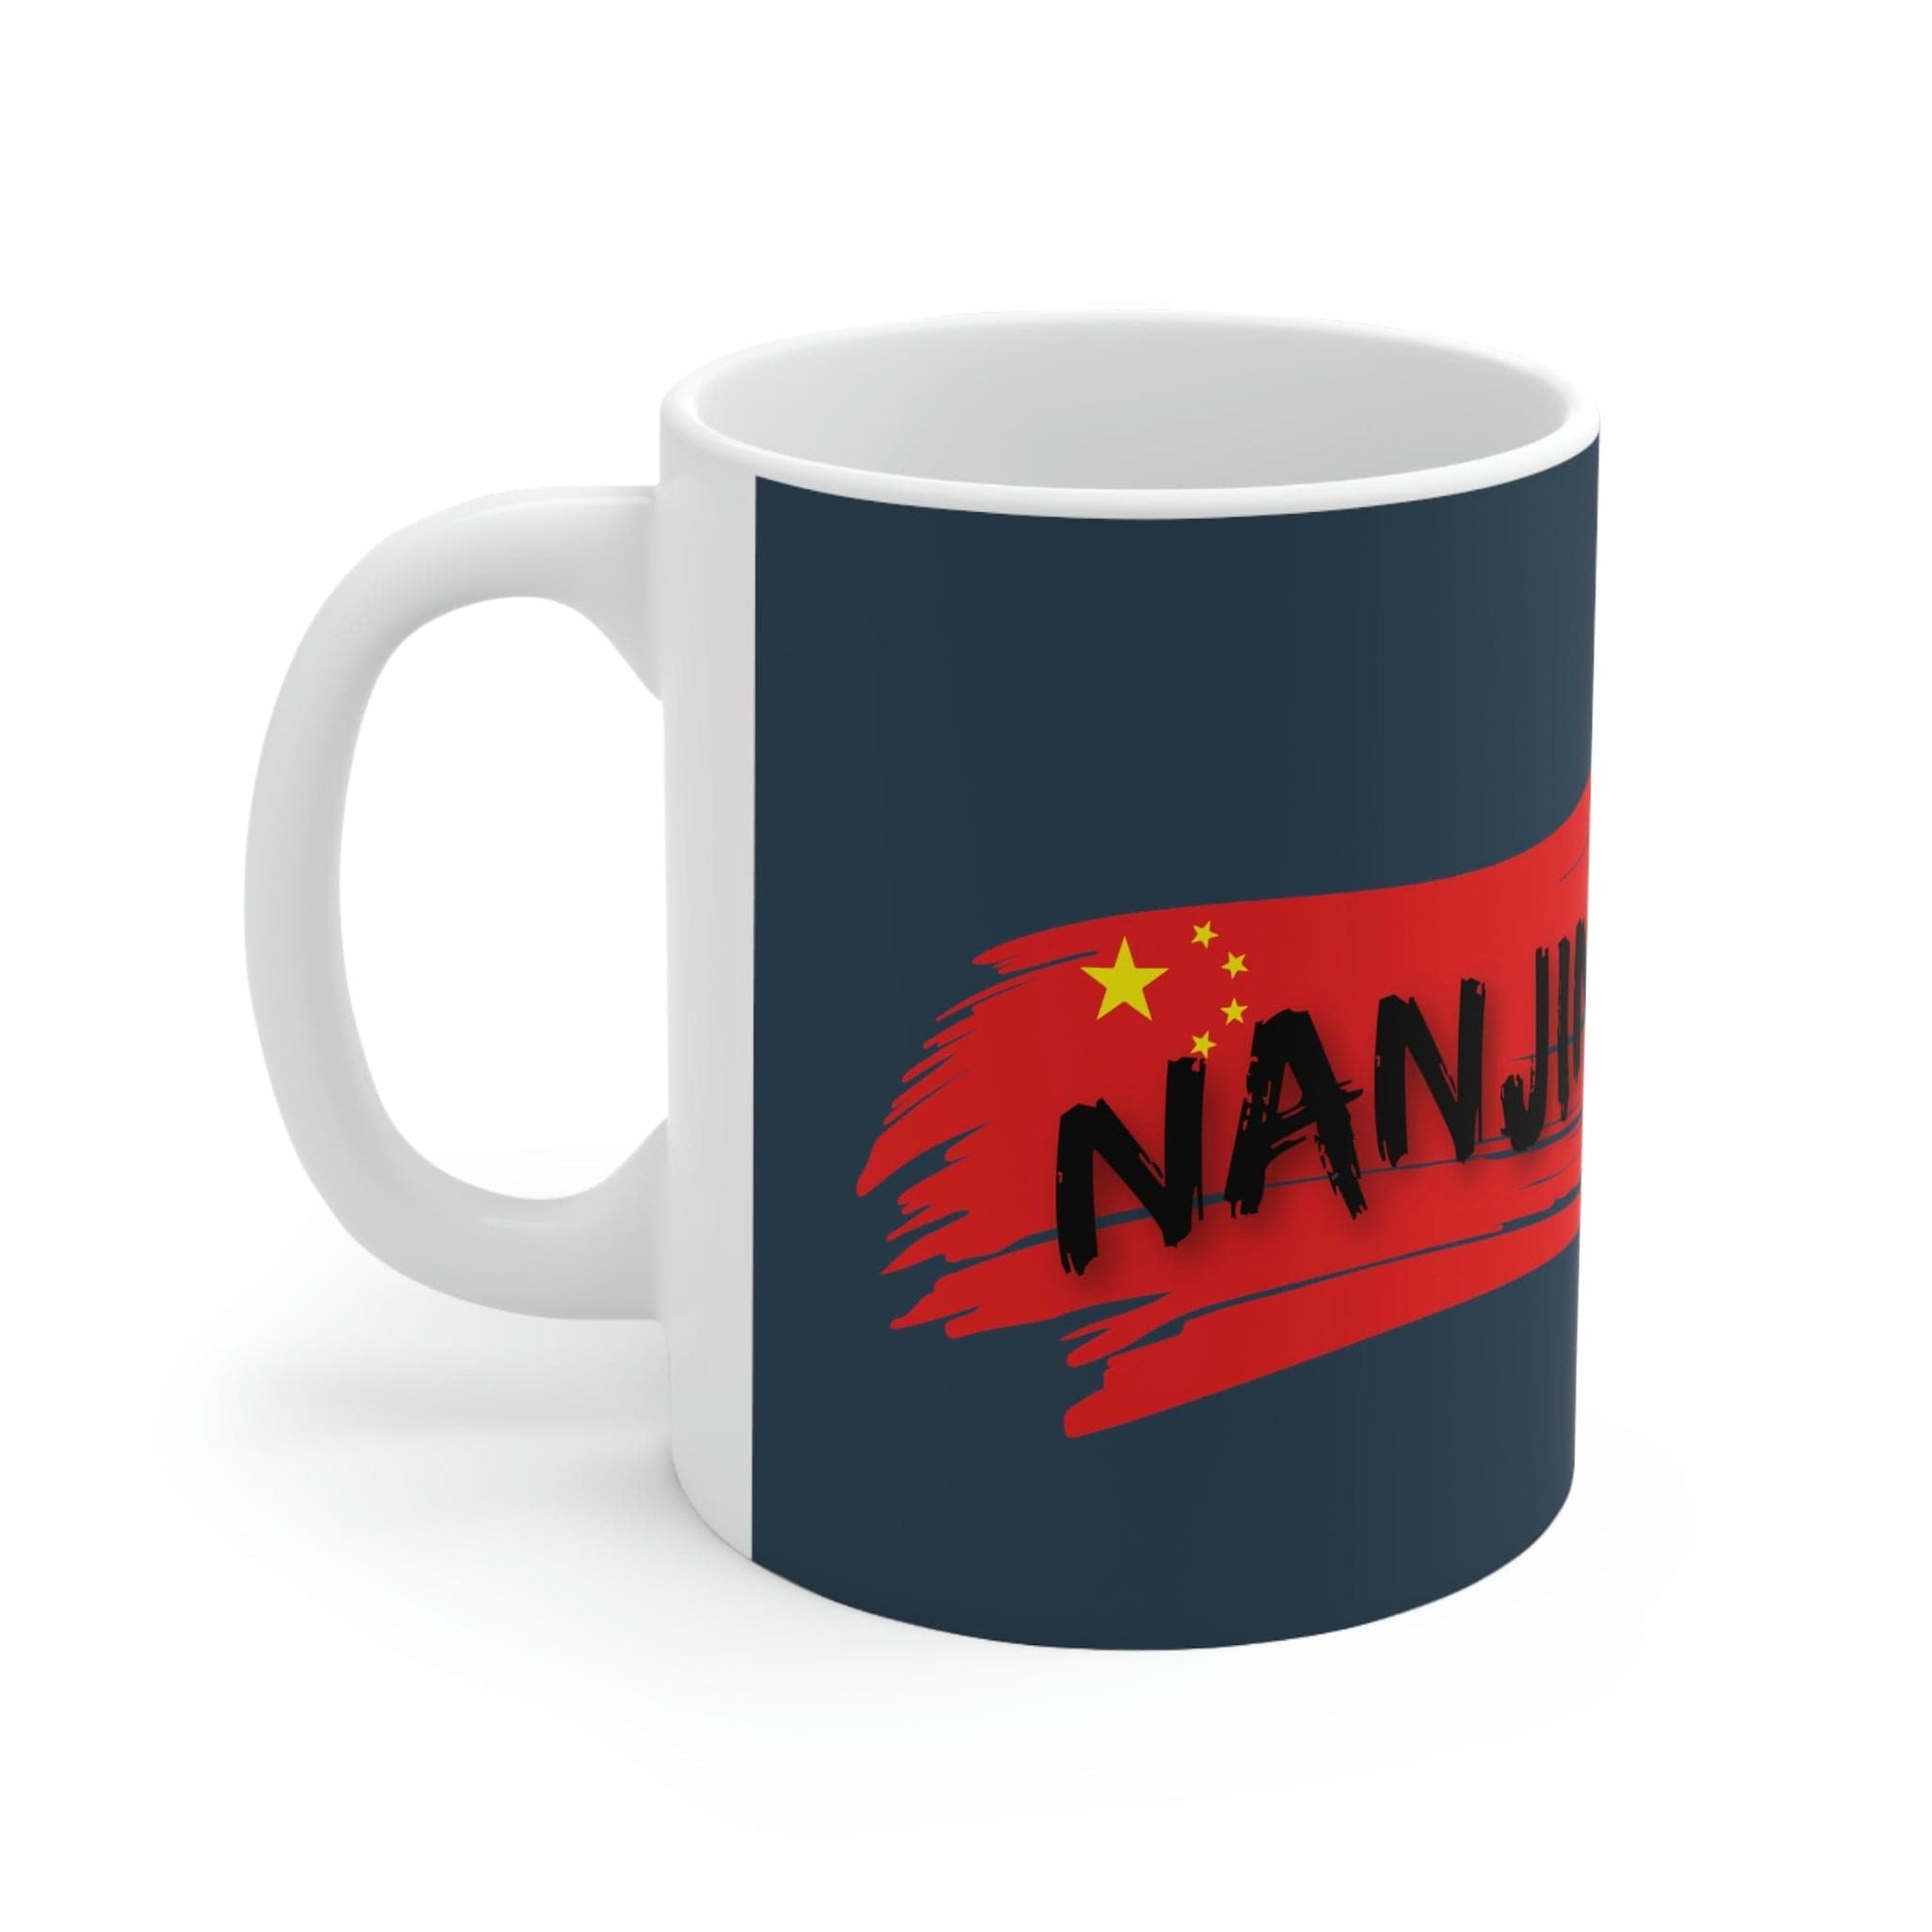 NANJING - Awesome Ceramic Mug, Exclusive Design